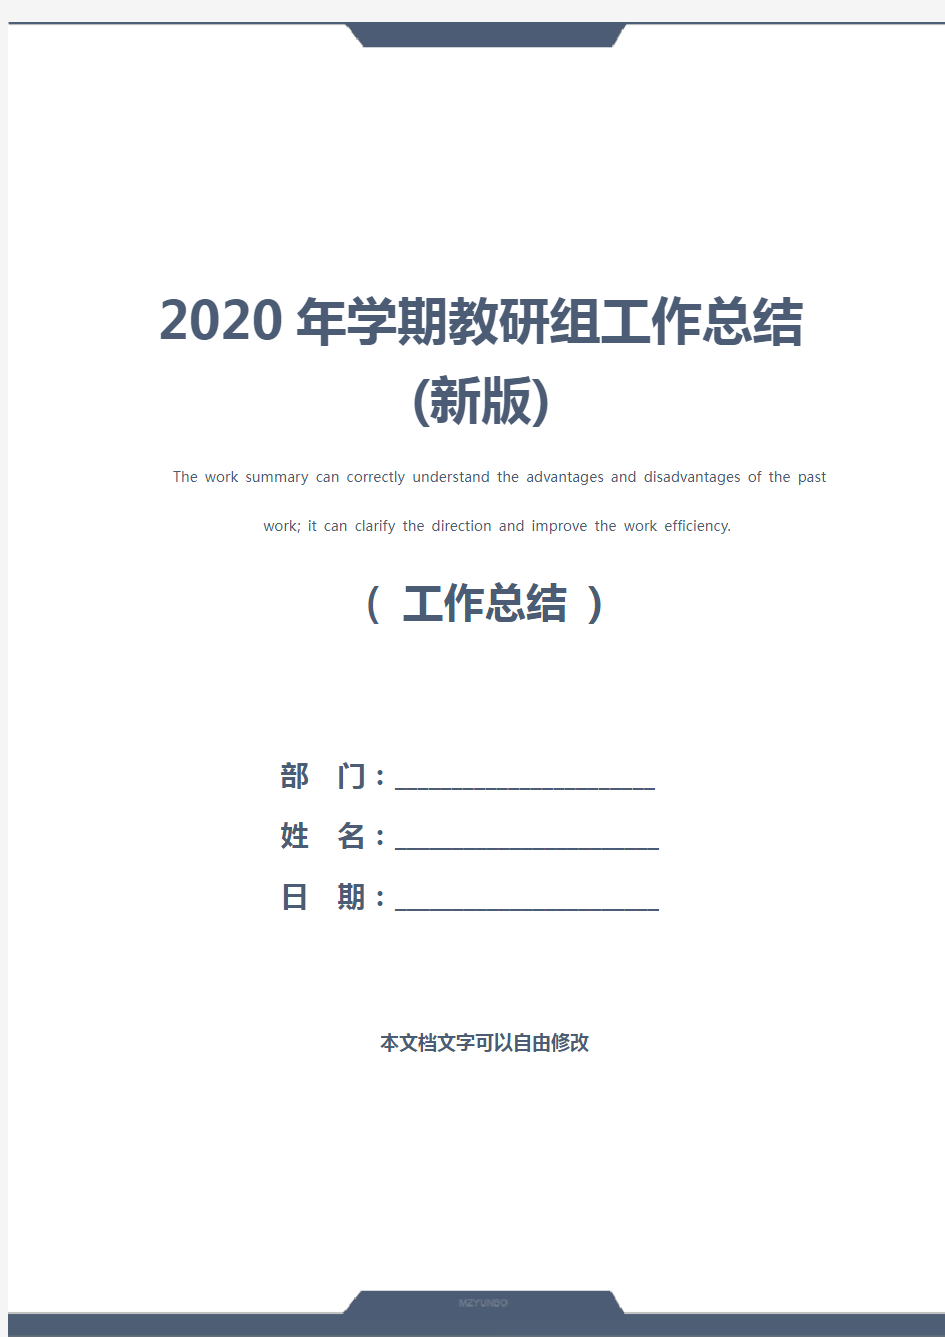 2020年学期教研组工作总结(新版)